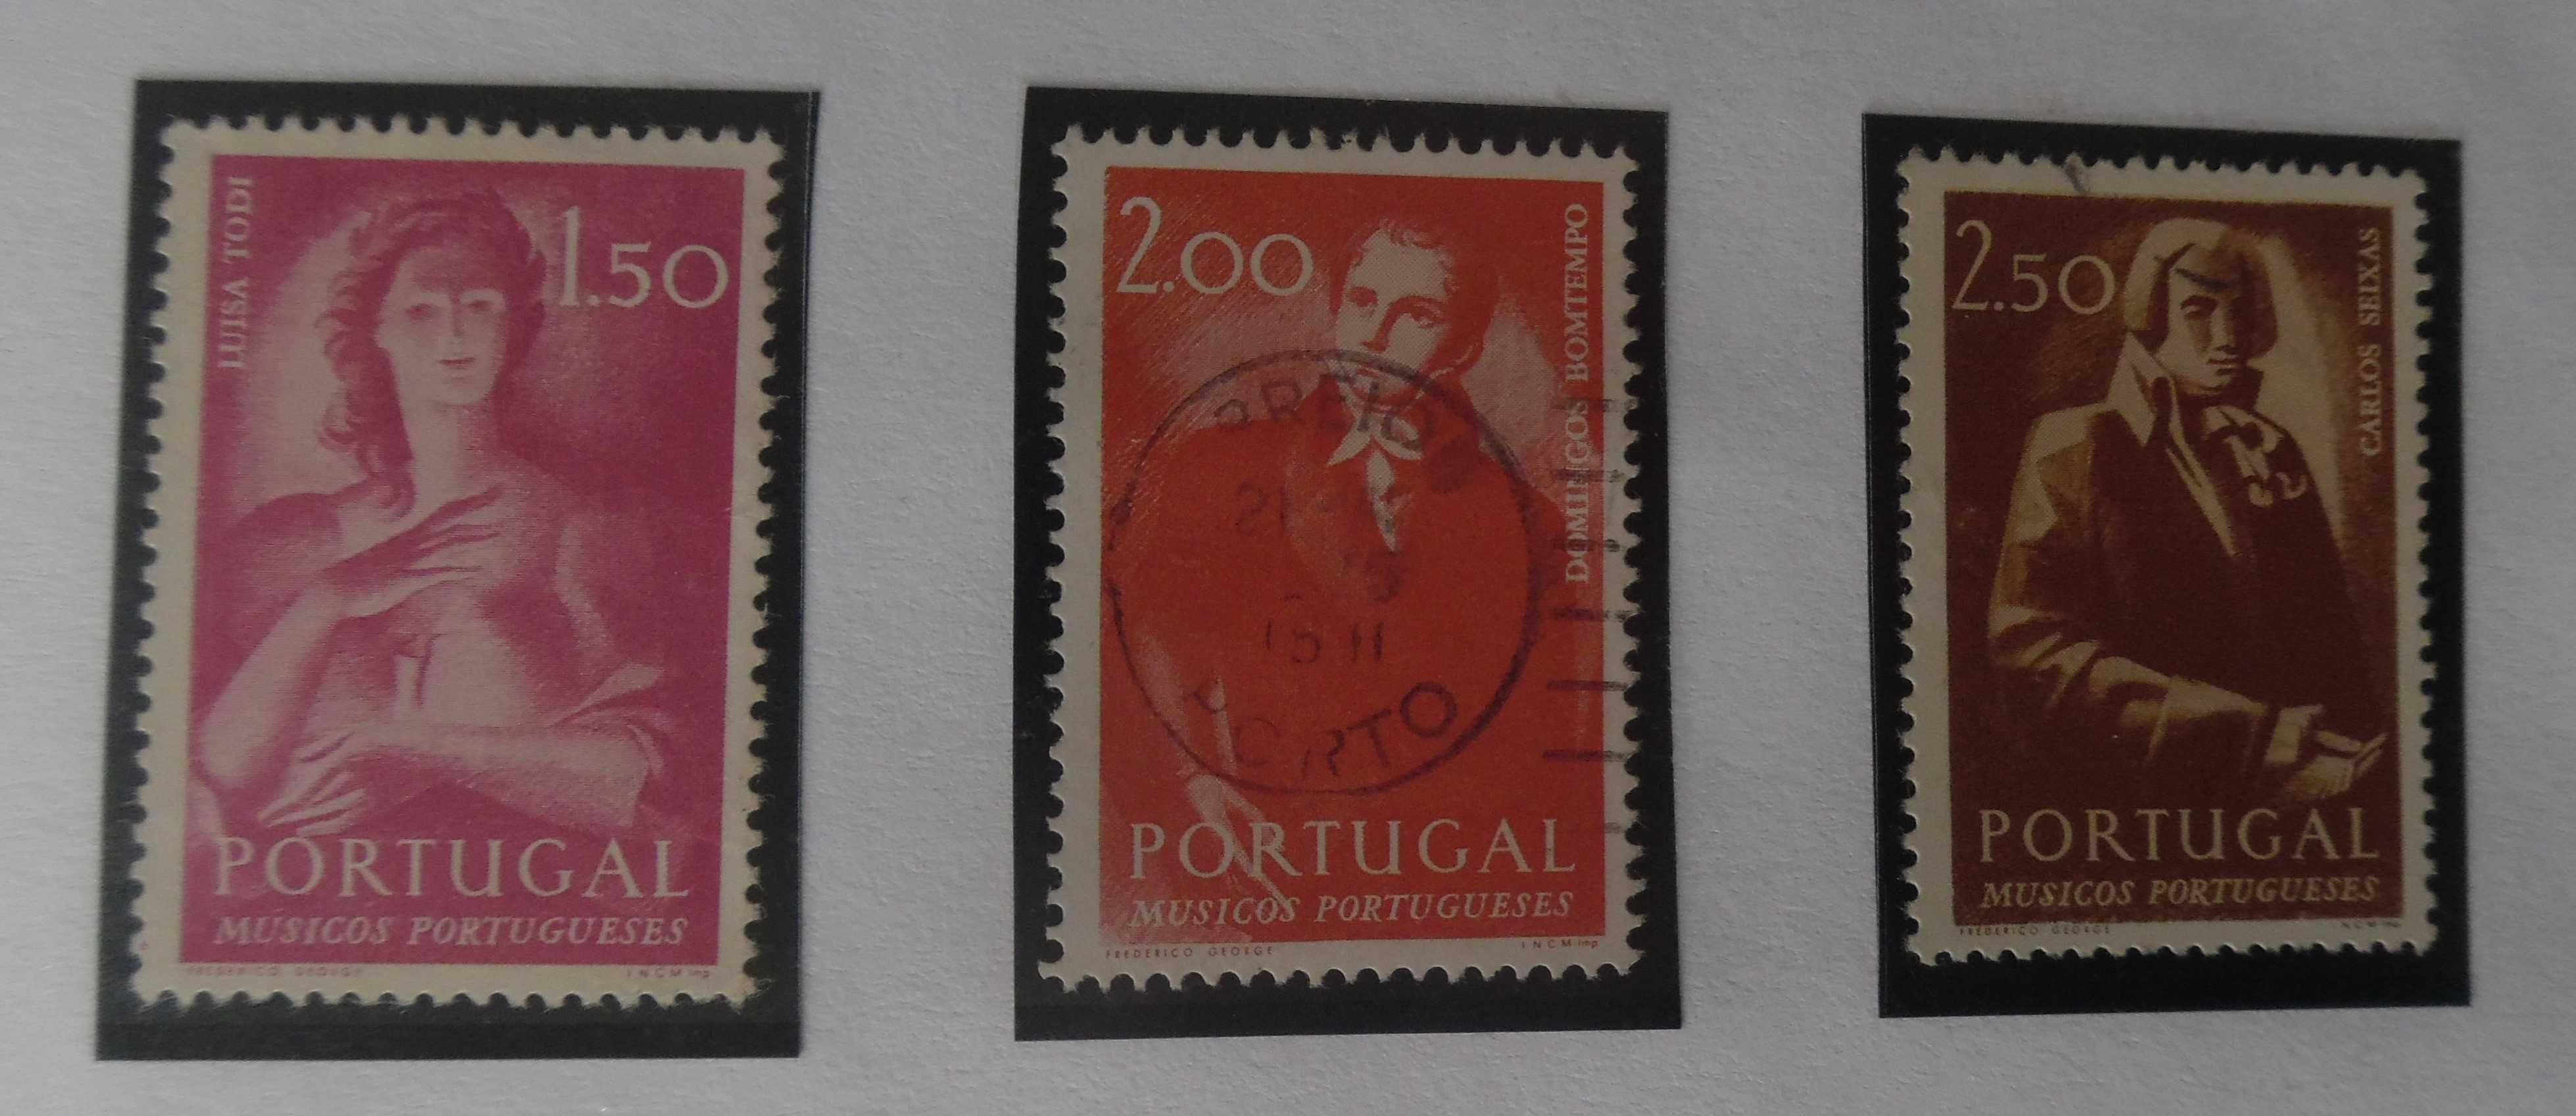 Selos Portugal 1974-Músicos Portugueses Série Completa